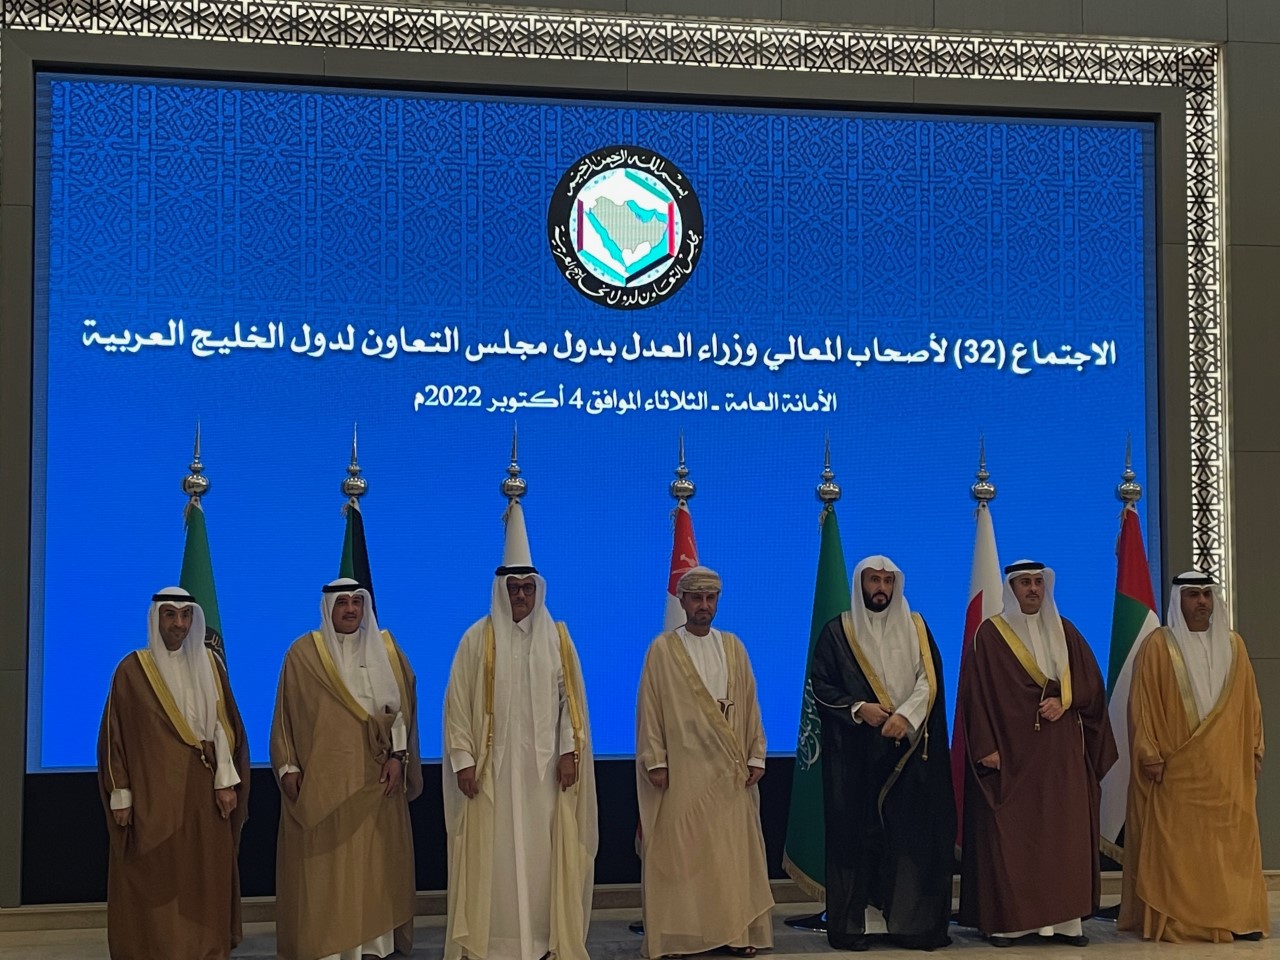 وزراء العدل الخليجيون يعقدون اجتماعهم الـ 32 بمشاركة الكويت